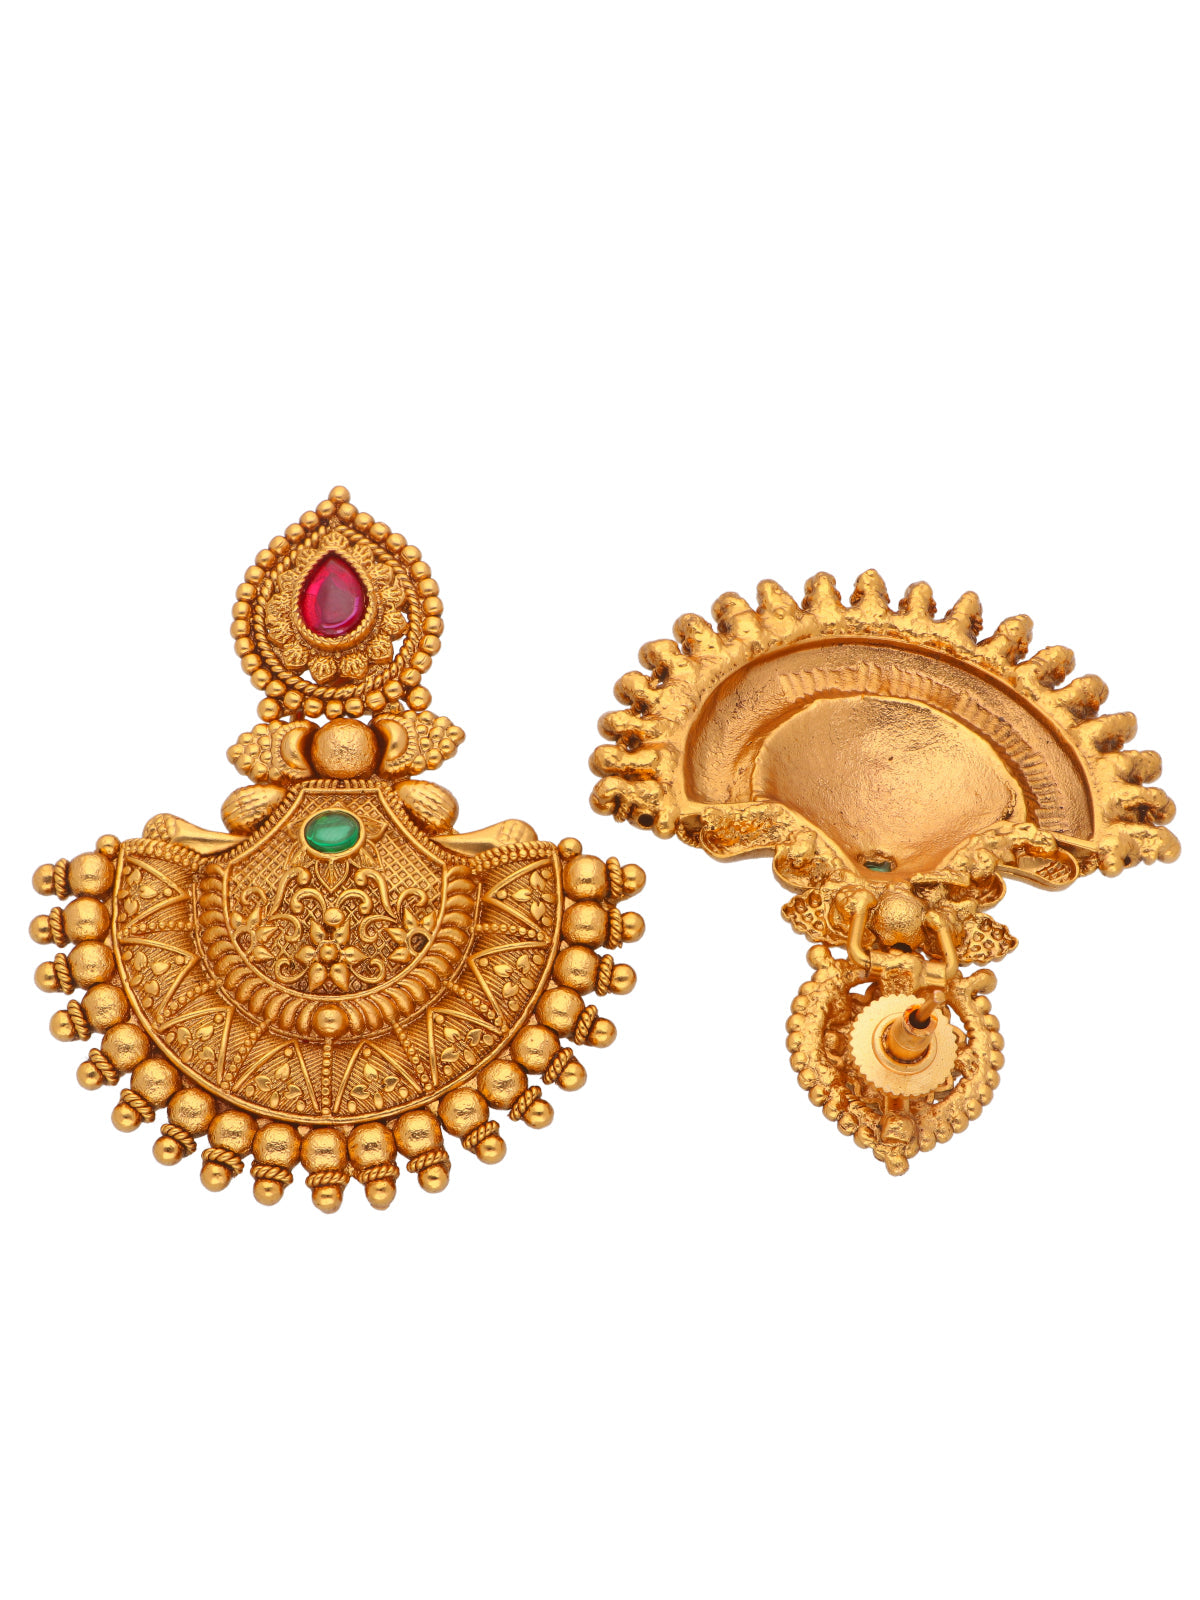 MANEKRATNA Kemp Earrring Beautiful Designer Matte Gold Polish Temple Jhumka  Earring, Size: H : 5.3cm at Rs 668/pair in Mumbai